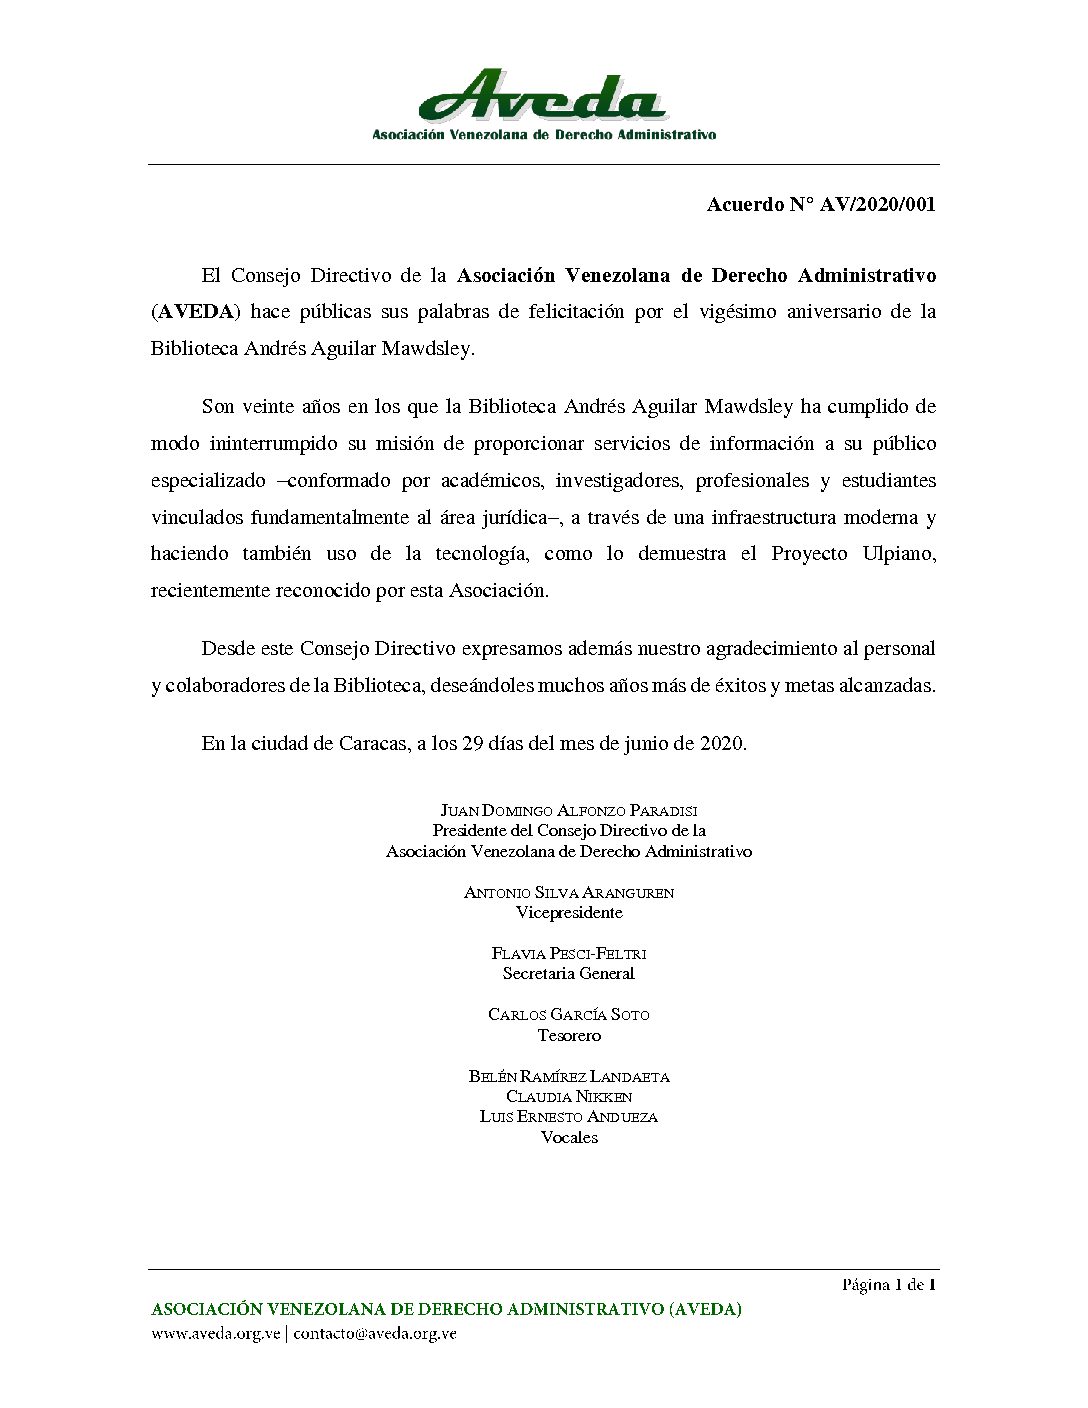 La Asociación Venezolana de Derecho Administrativo (AVEDA) emitió Acuerdo de felicitación con ocasión del vigésimo aniversario de la Biblioteca «Andrés Aguilar Mawdsley»